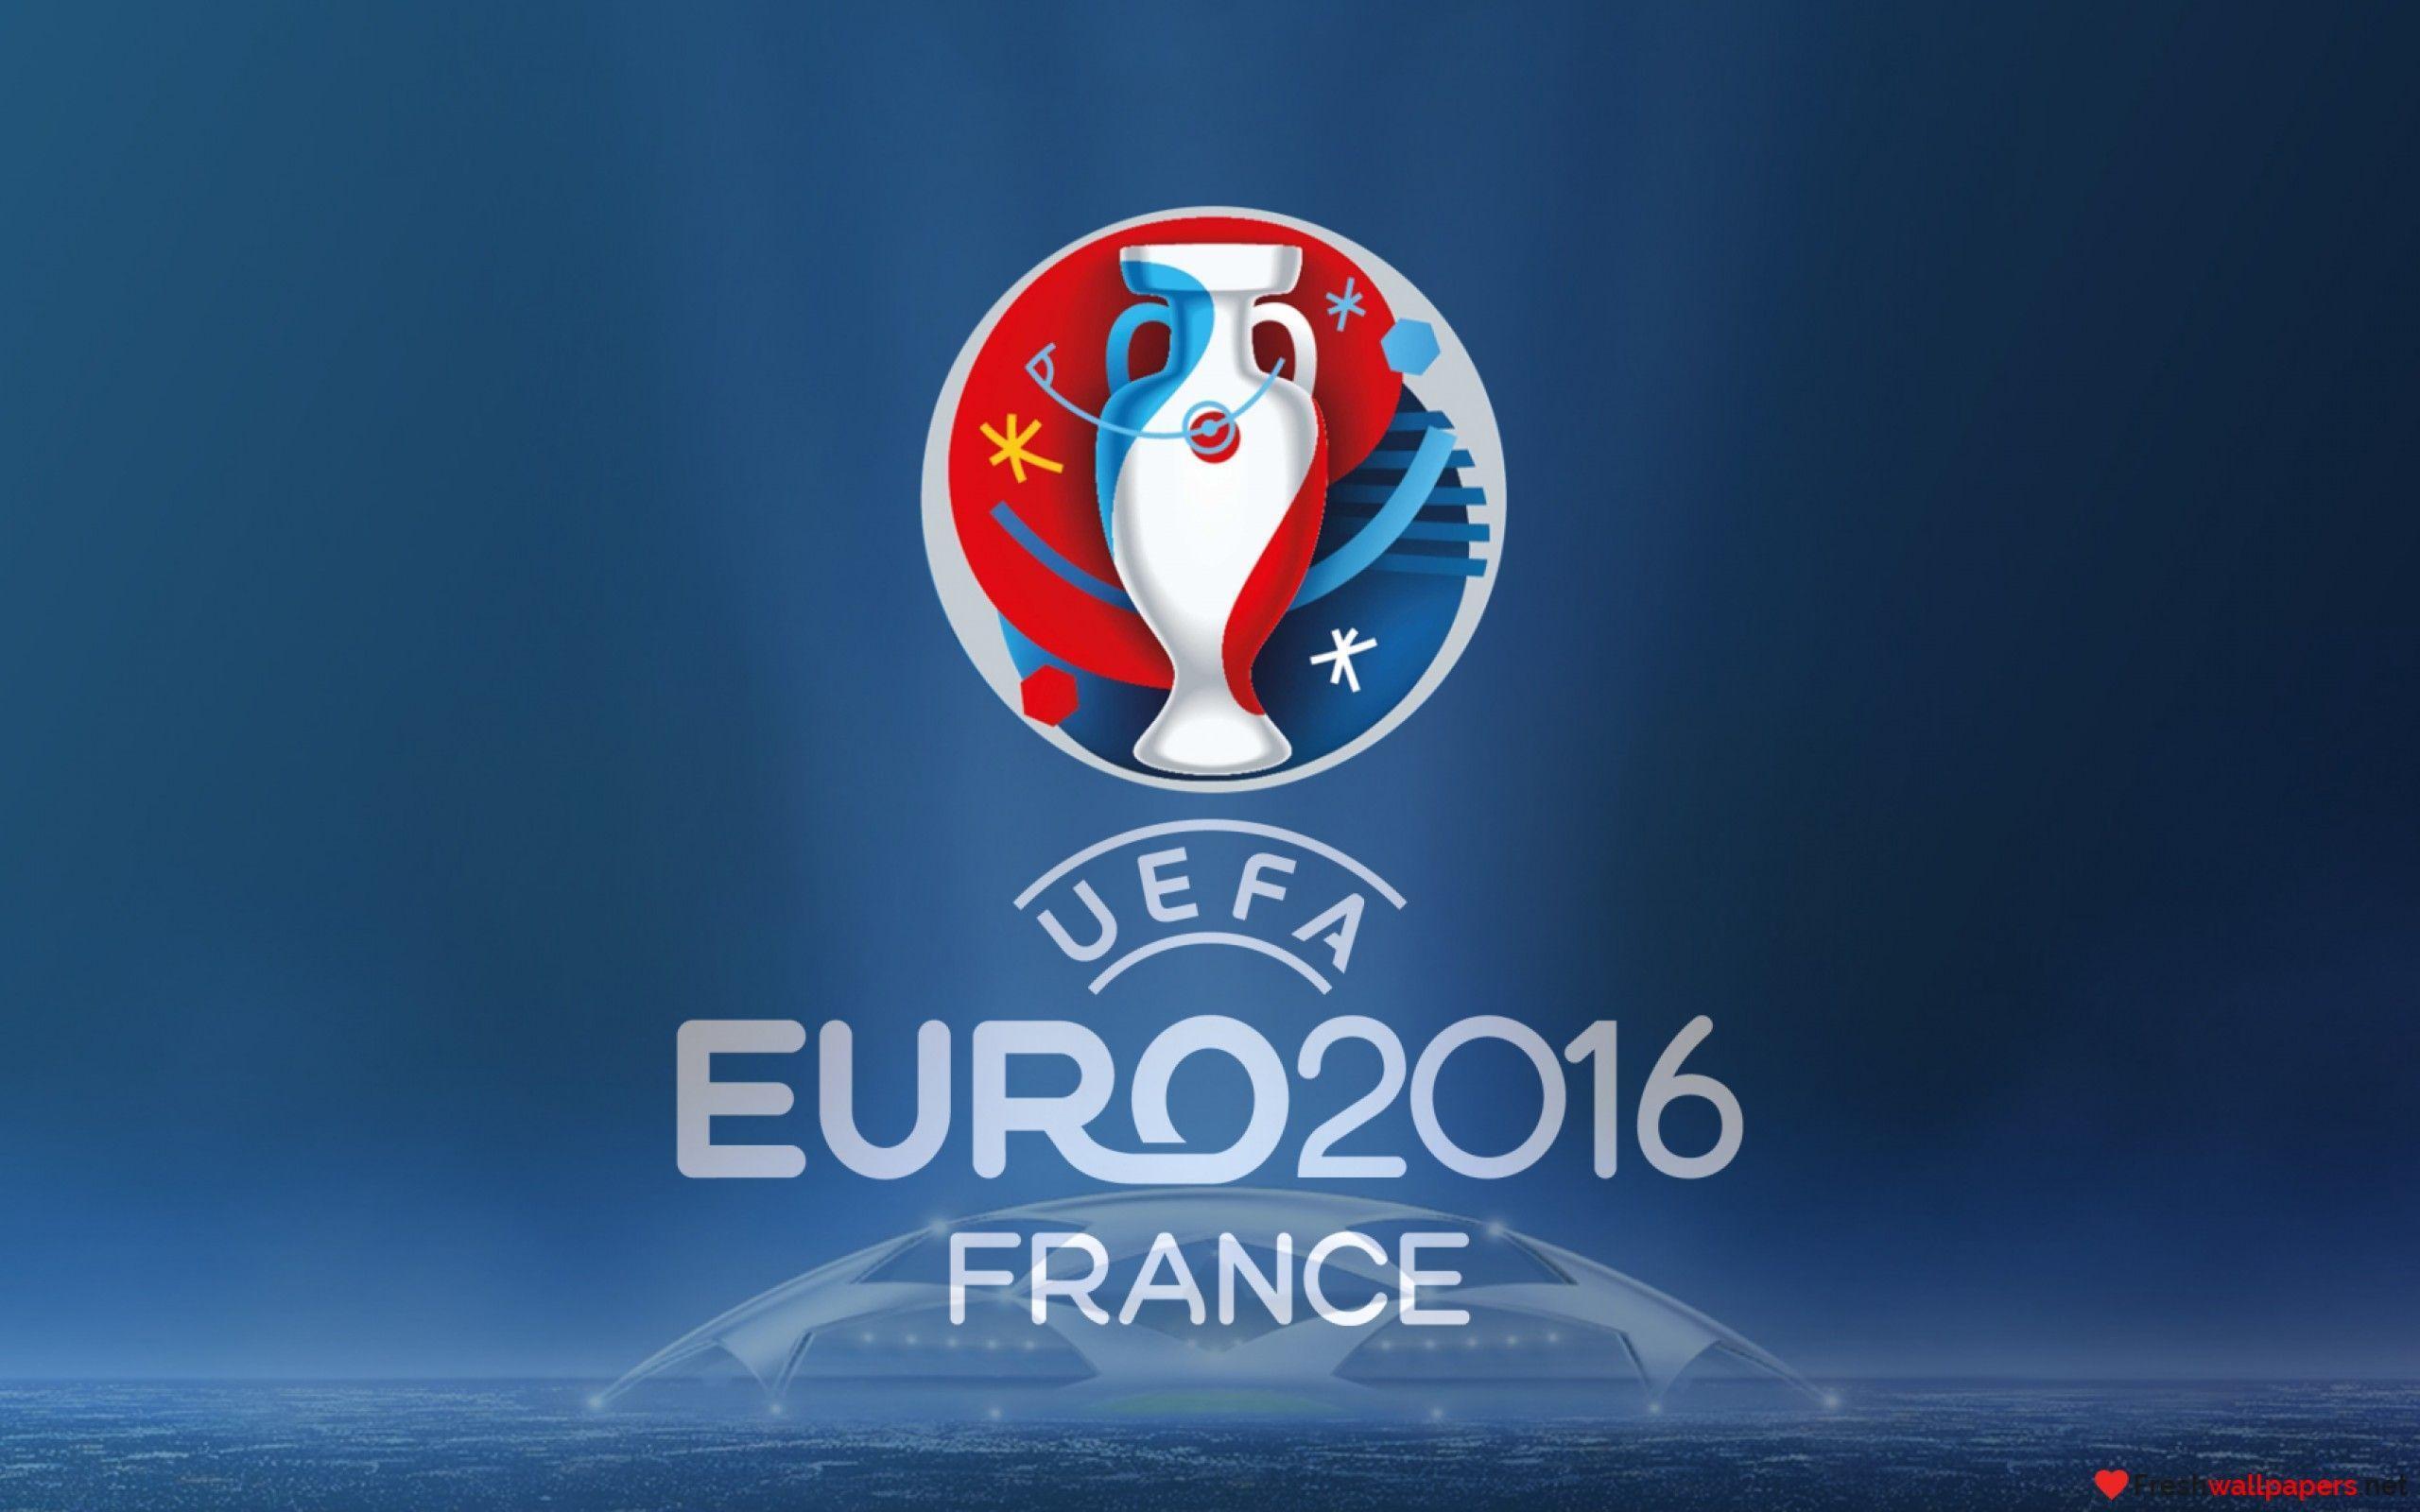 UEFA Euro 2016 France Football wallpaper